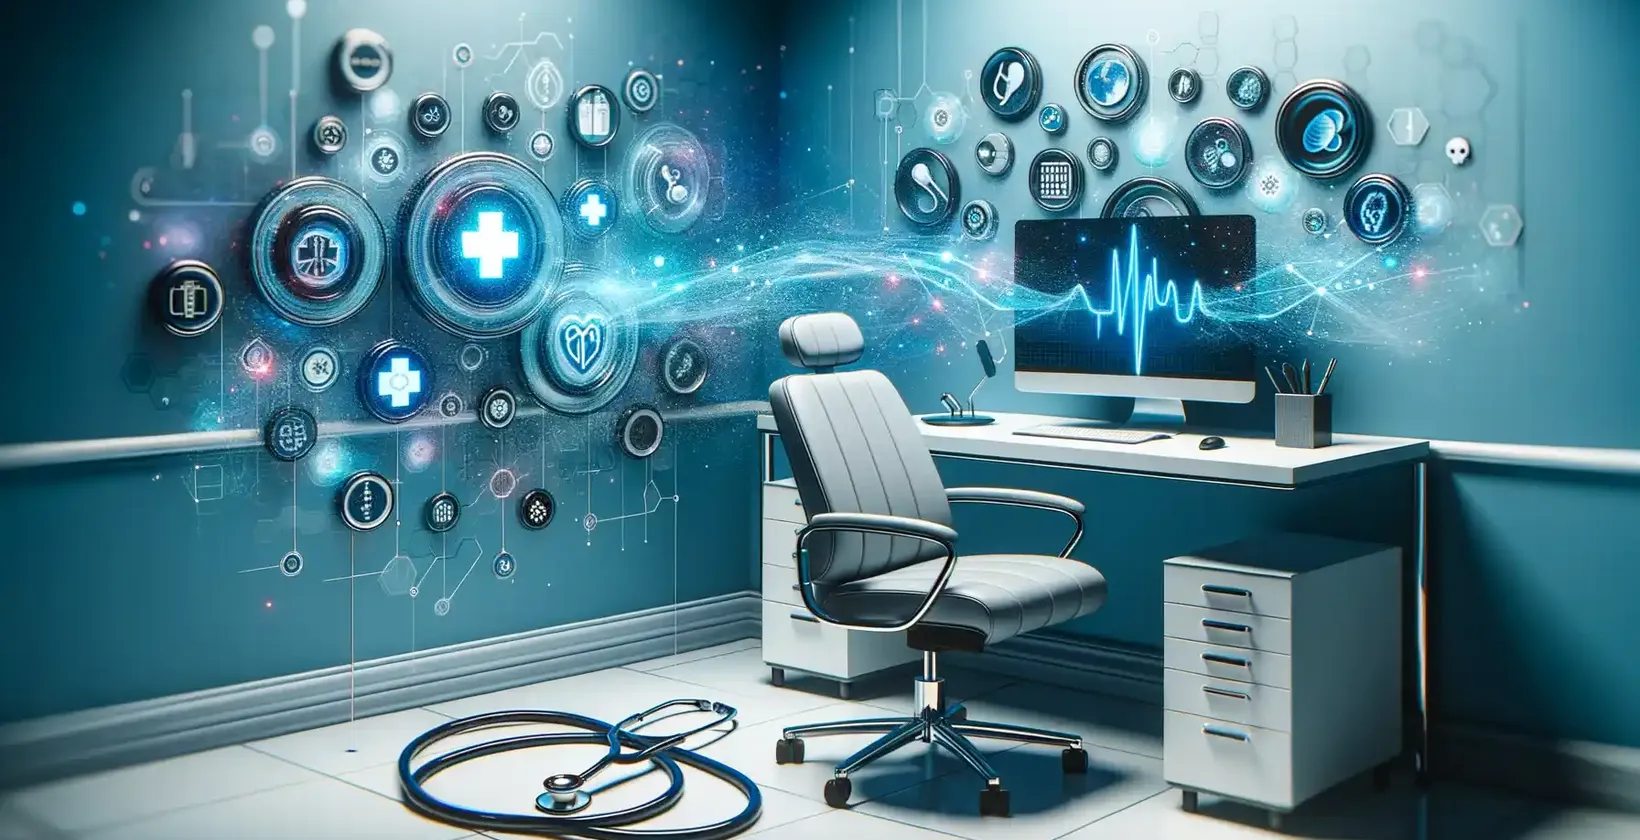 Aplikácie prepisu lekárskych záznamov v modernej kancelárii s digitálnymi zdravotnými symbolmi a holografickými zvýrazneniami